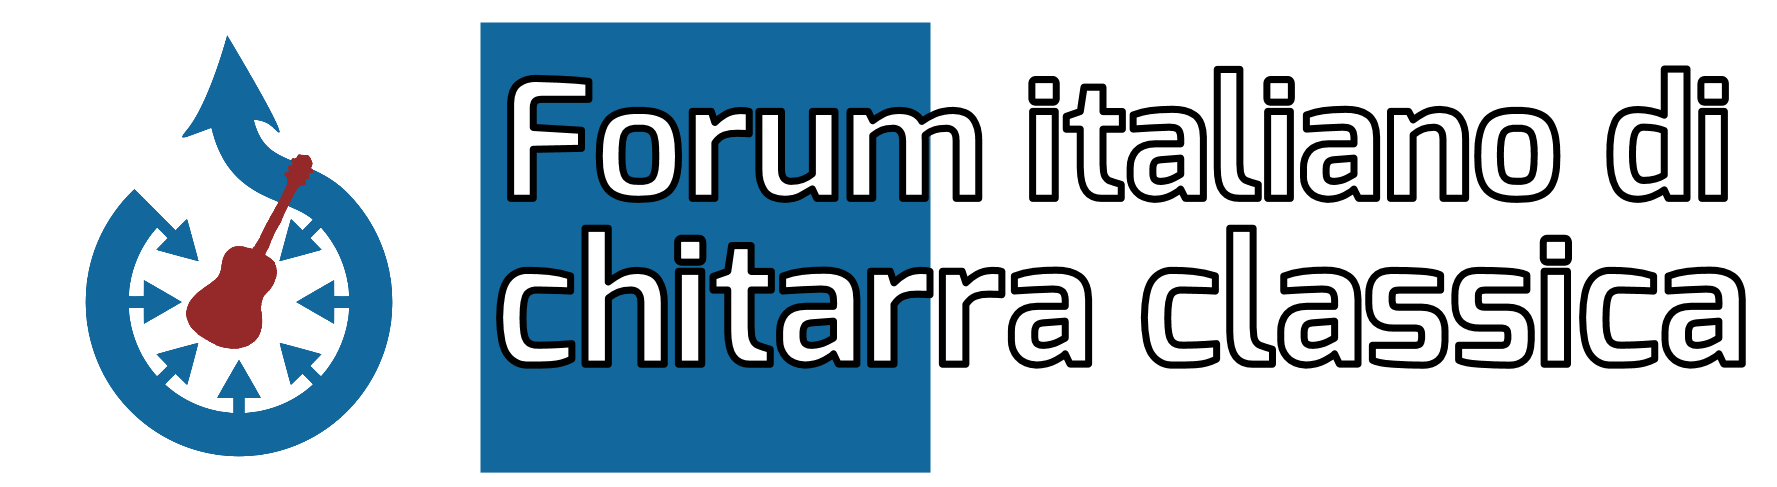 Forum Italiano di Chitarra Classica